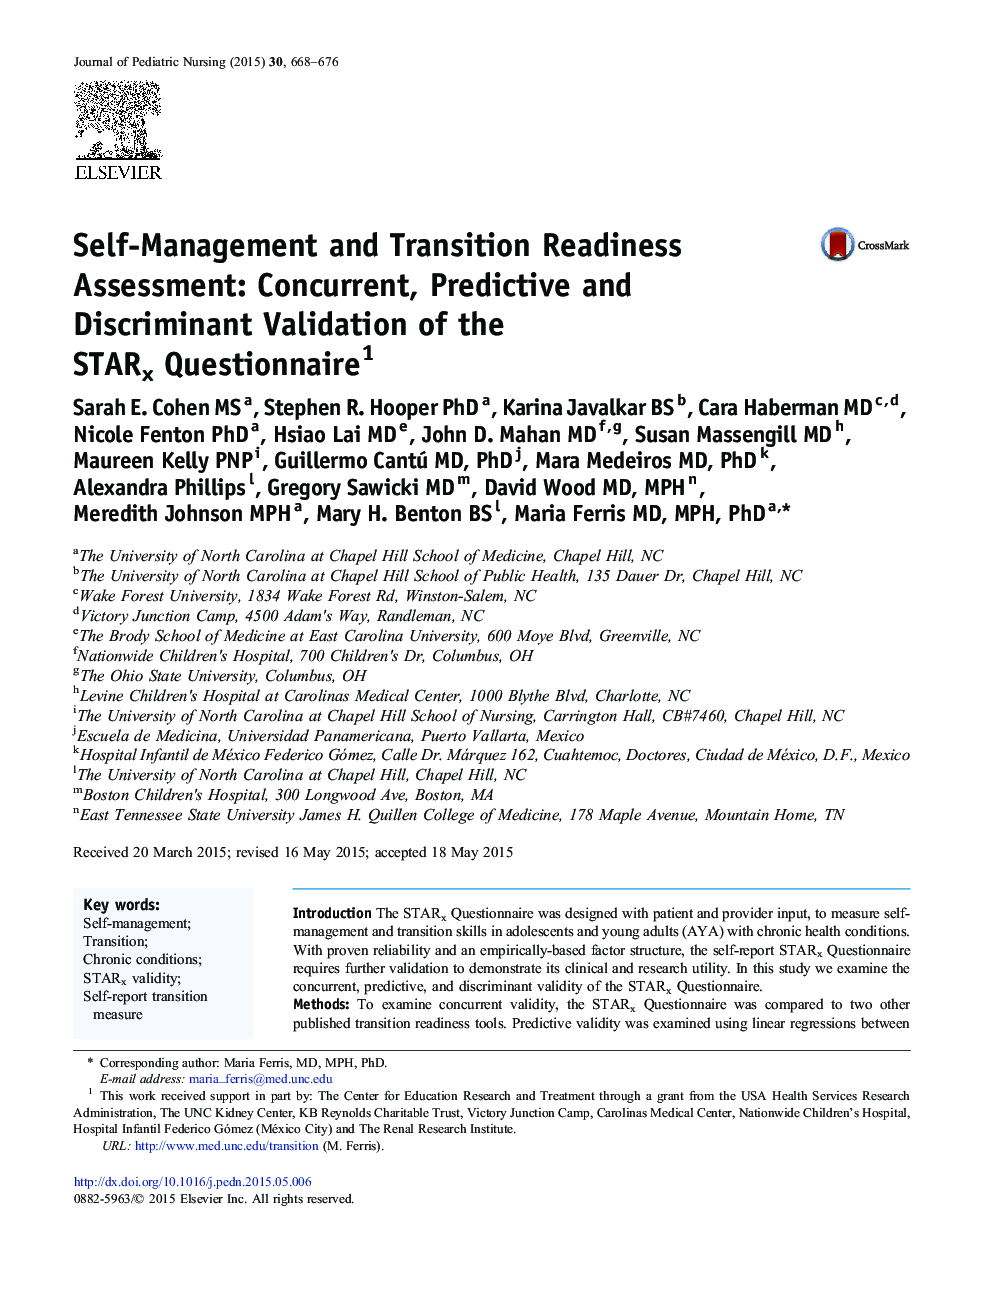 ارزیابی آمادگی خودمدیریتی و انتقال: اعتبارسنجی همزمان، پیش بینانه و تبعیض آمیز پرسشنامه STARx